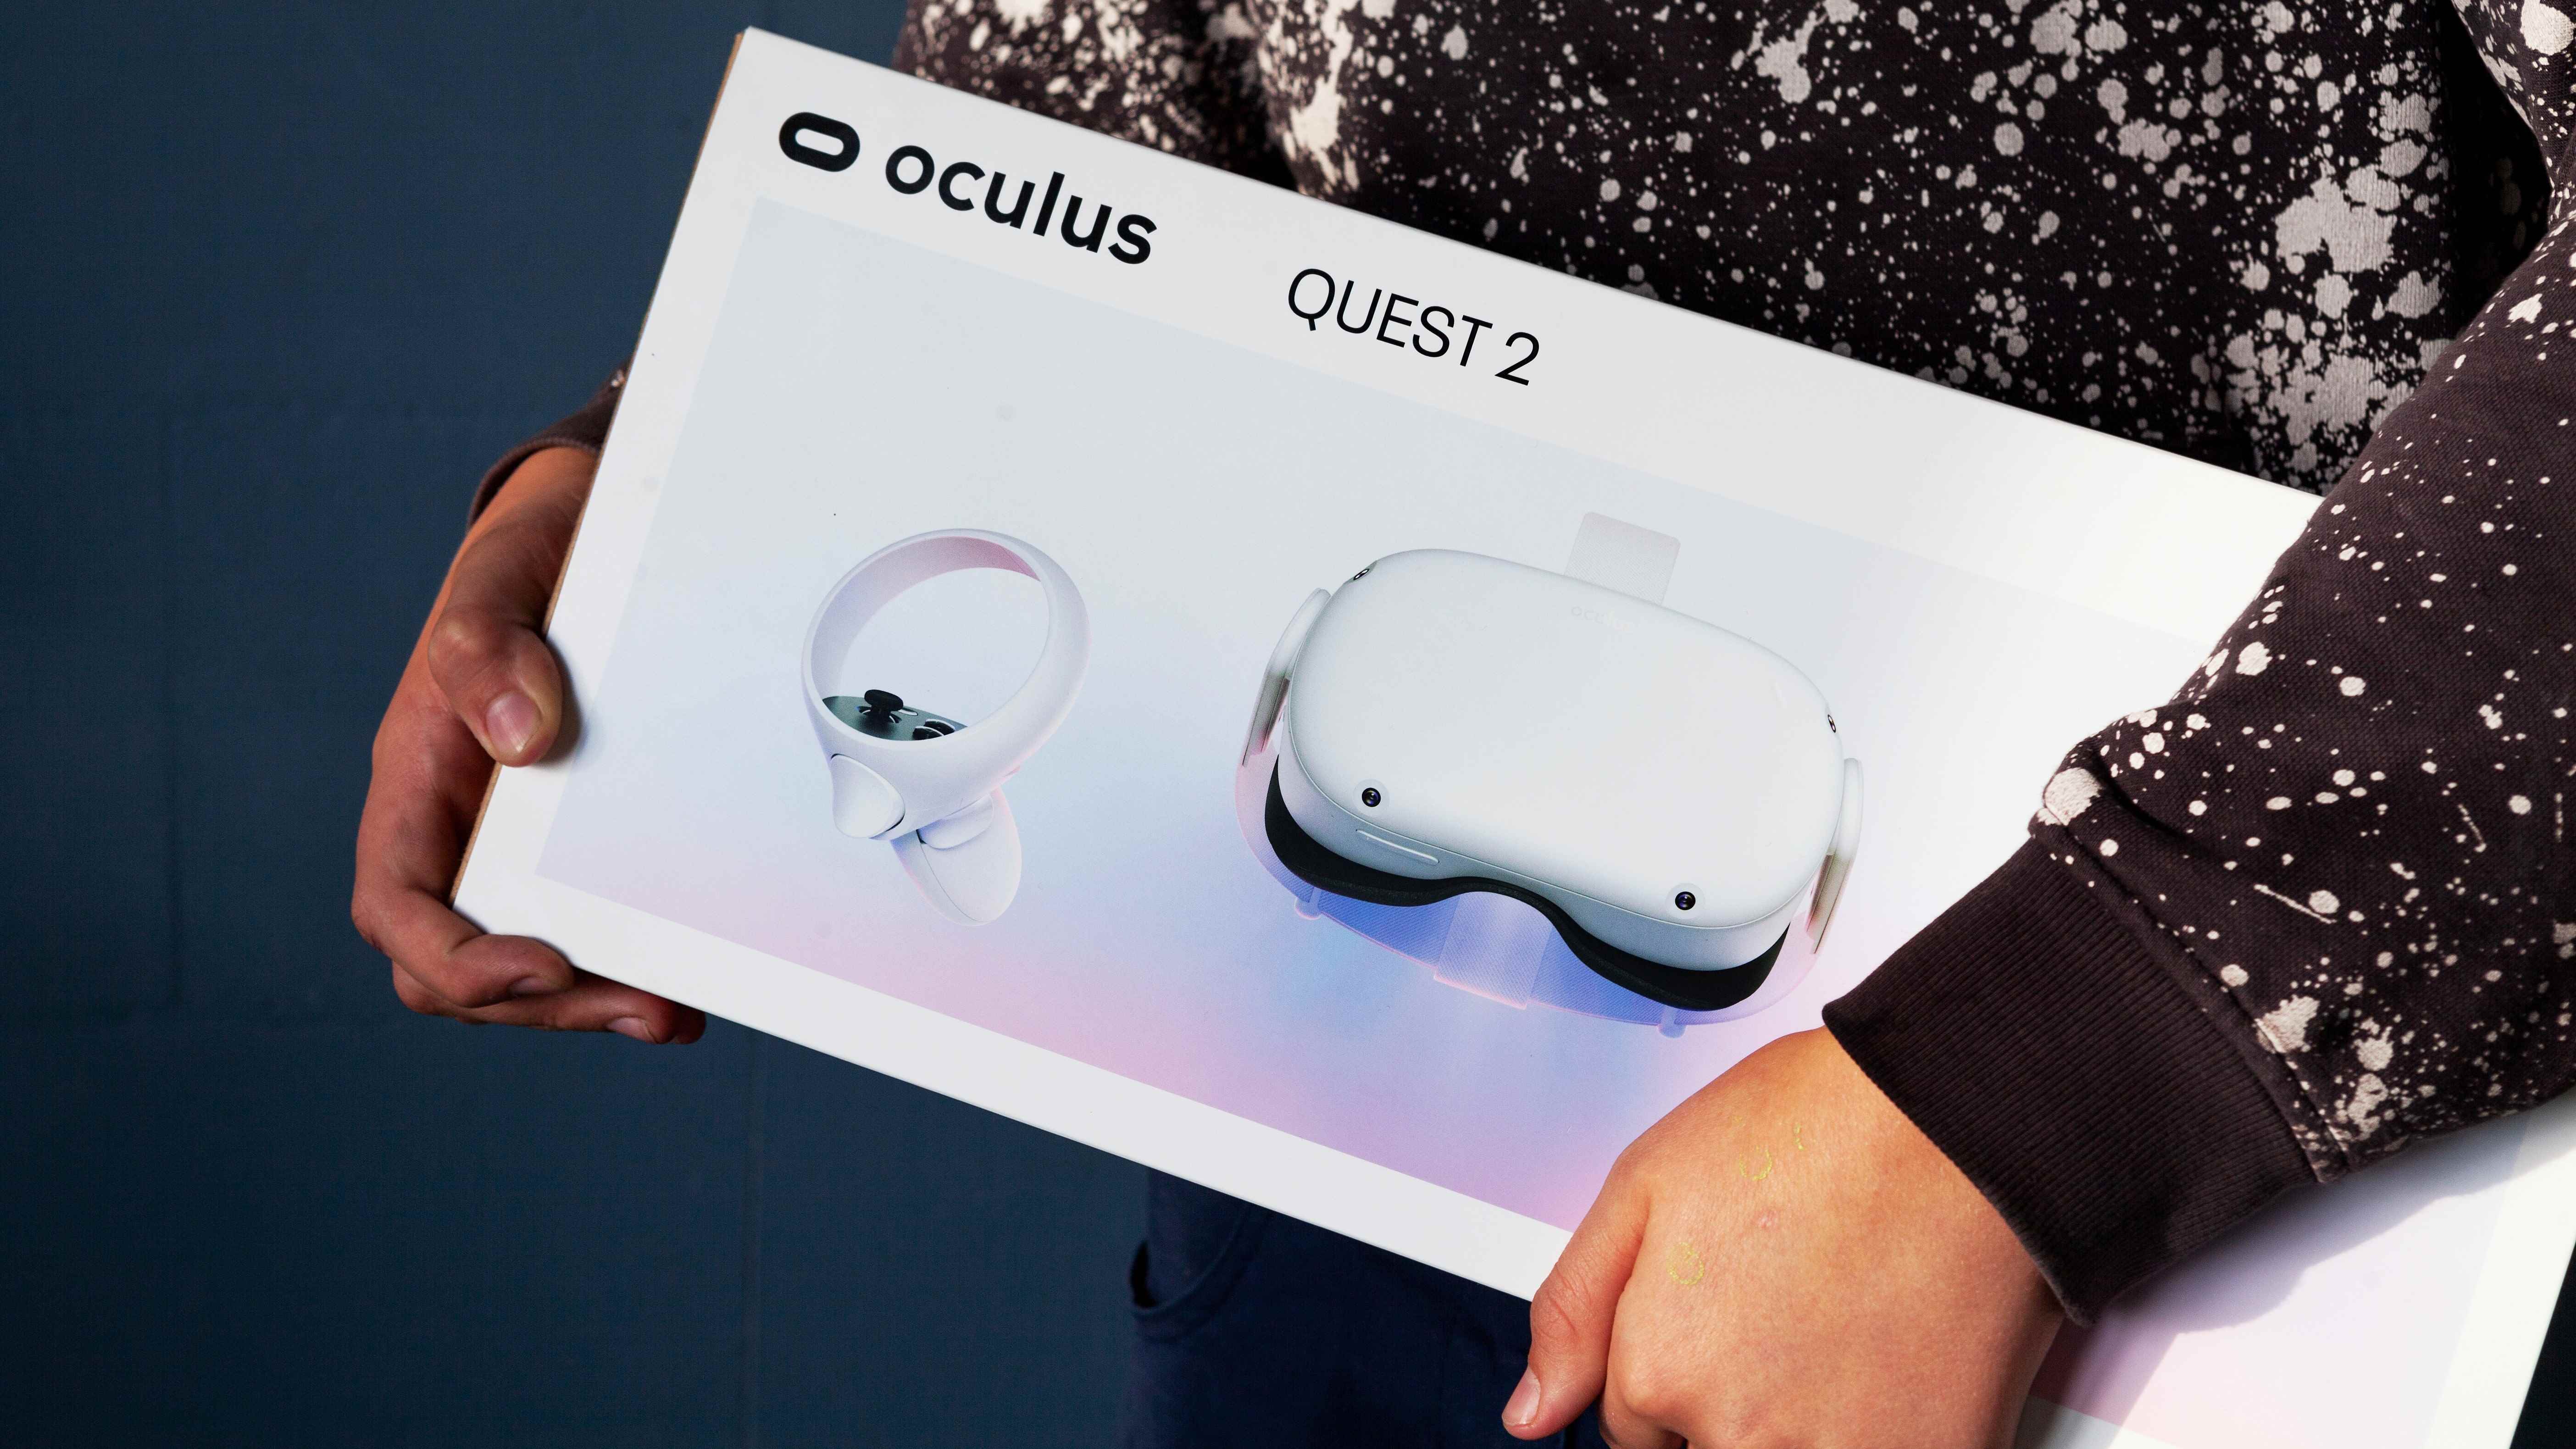 İçinde Oculus Quest 2 VR başlığı olan bir kutu taşıyan bir kişi